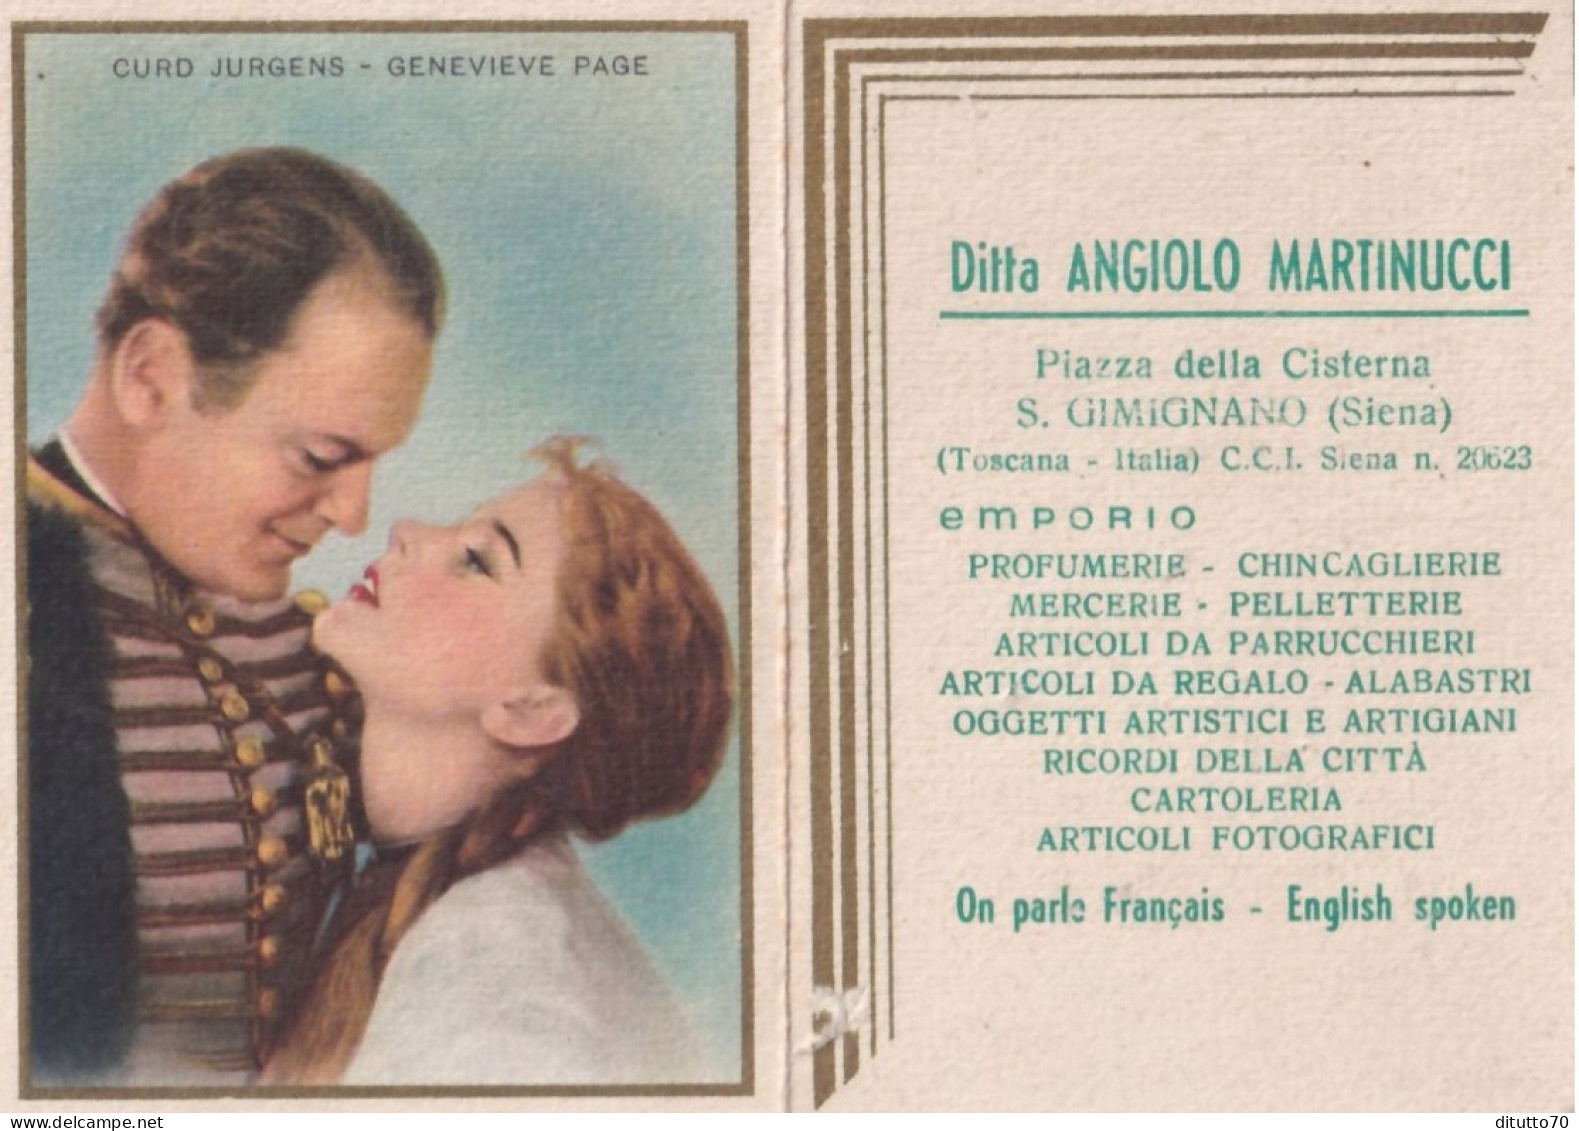 Calendarietto - Curd Jurgens - Genevieve Page - Ditta Angiolo Martinucci - S.gimignano - Siena - Anno 1959 - Petit Format : 1941-60